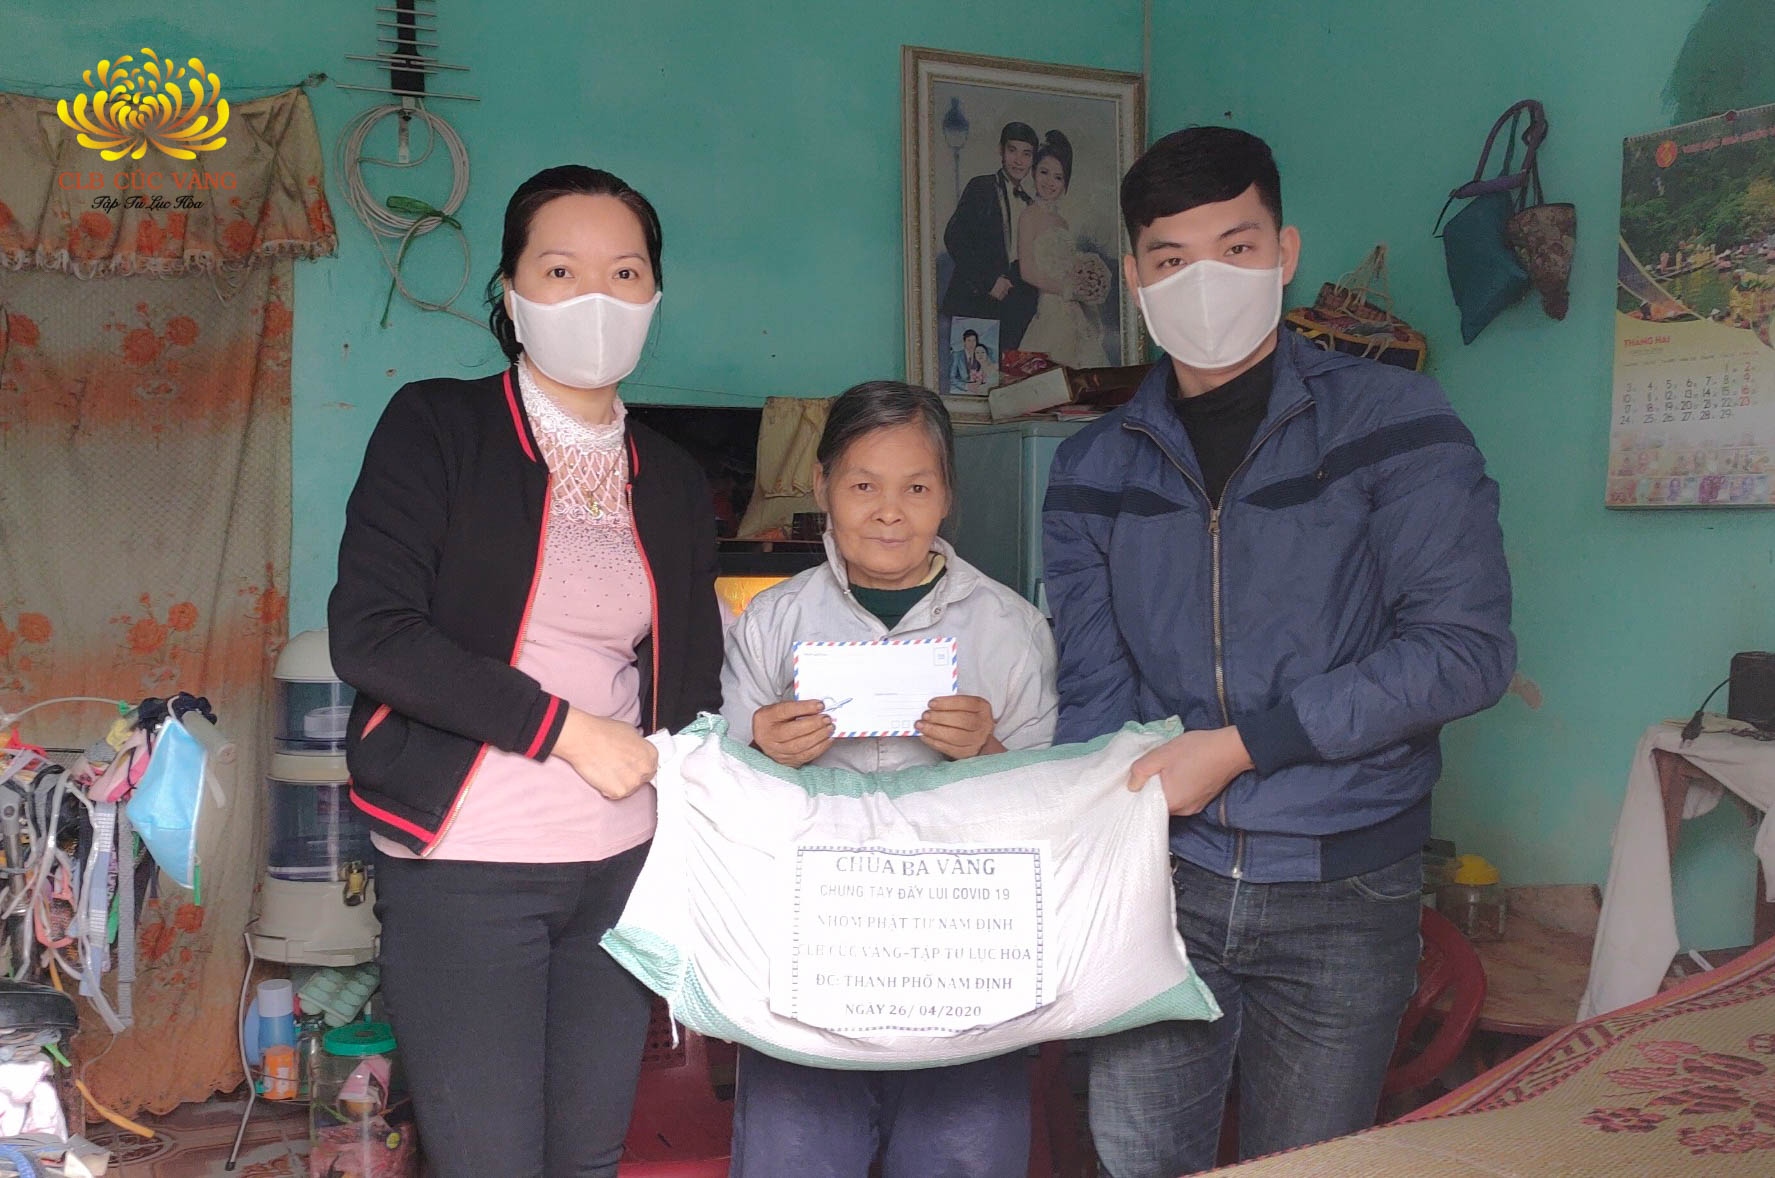 Phát tặng gạo tại Nam Định và Ninh Bình - Phật tử CLB Cúc Vàng chia sẻ khó khăn cùng cộng đồng trong mùa dịch COVID-19